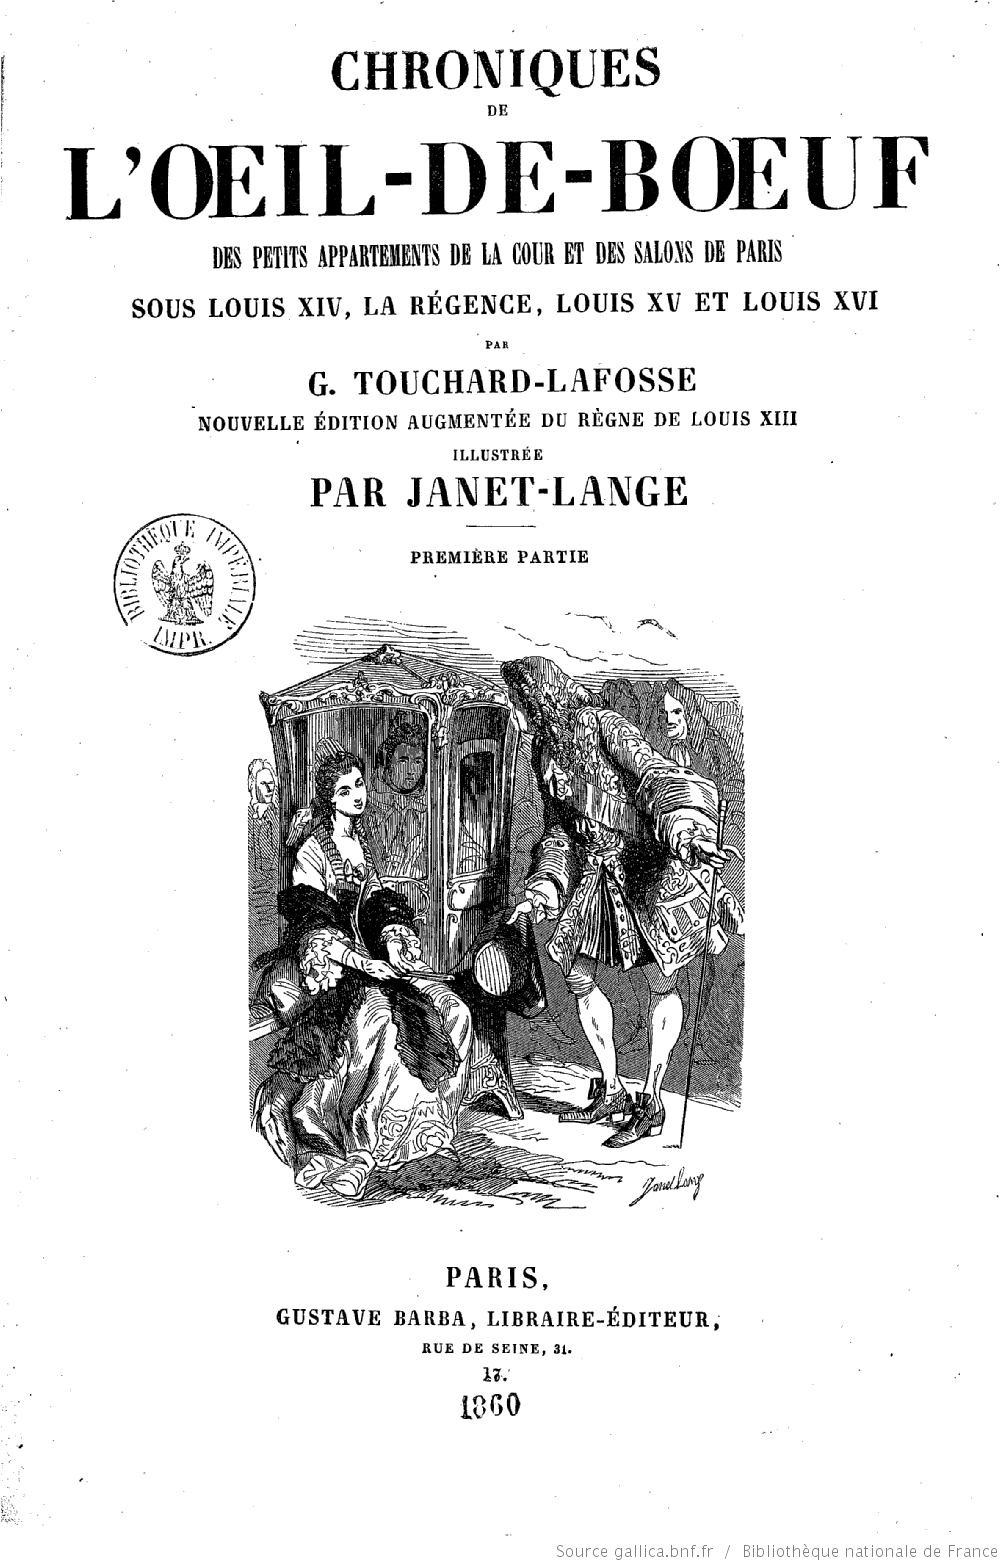 Touchard-Lafosse’s Pique-Nique Manqué (1776c)